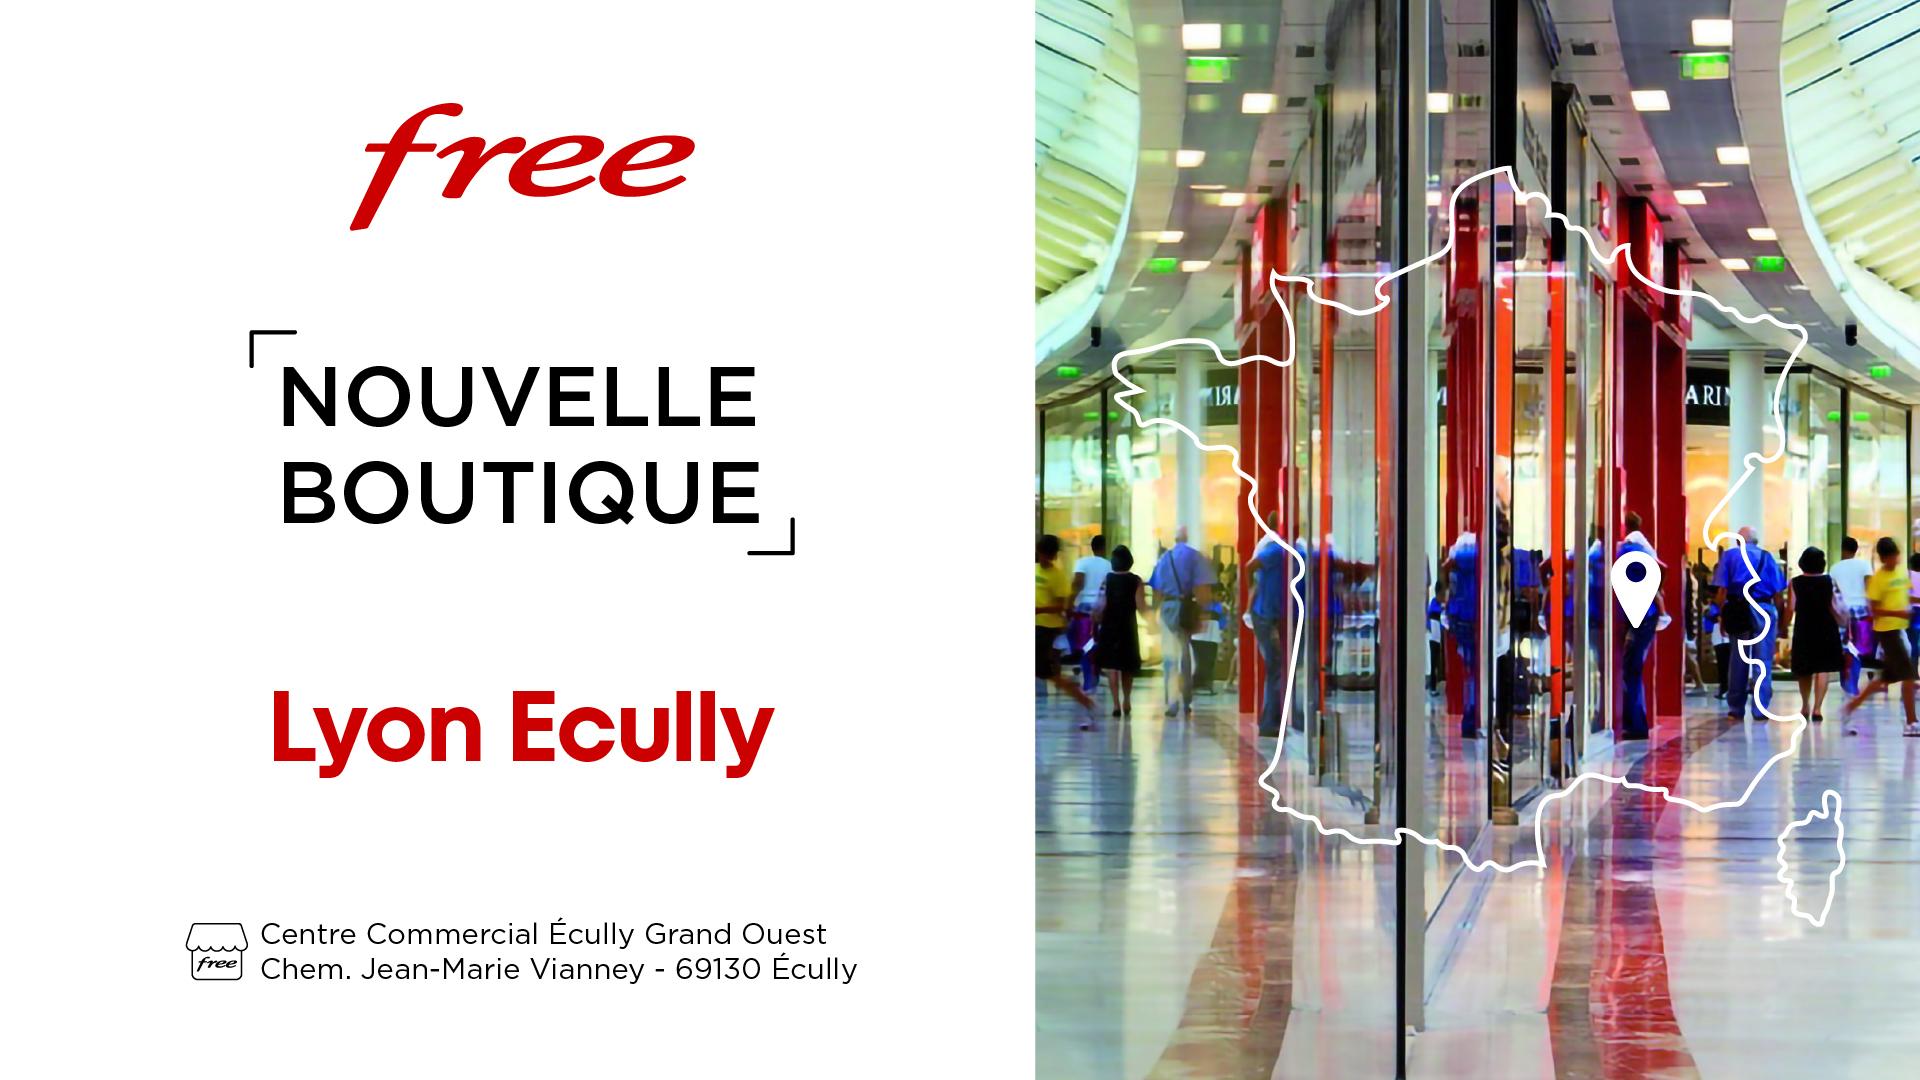 Découvrez la nouvelle boutique Free de Lyon Ecully